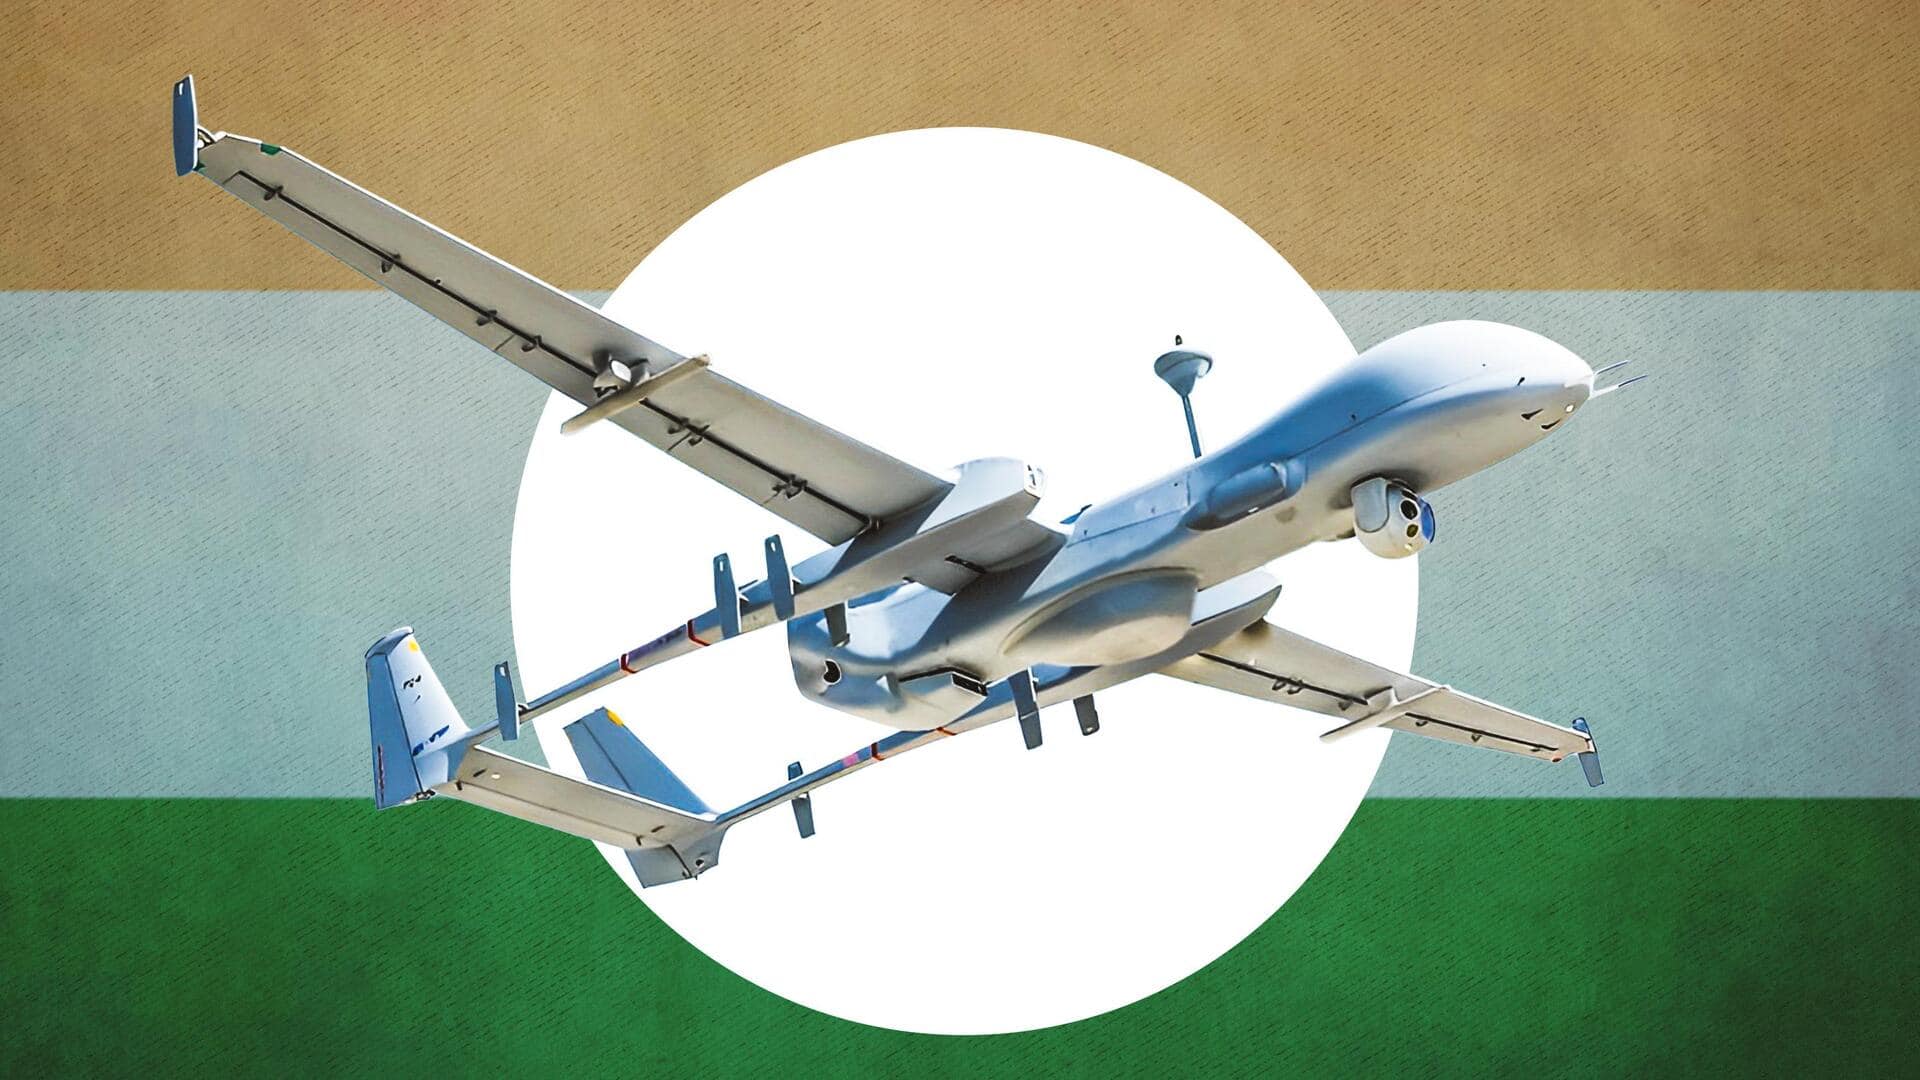 भारतीय वायुसेना ने उत्तरी सीमा पर हेरॉन मार्क 2 ड्रोन को किया तैनात, जानें विशेषताएं